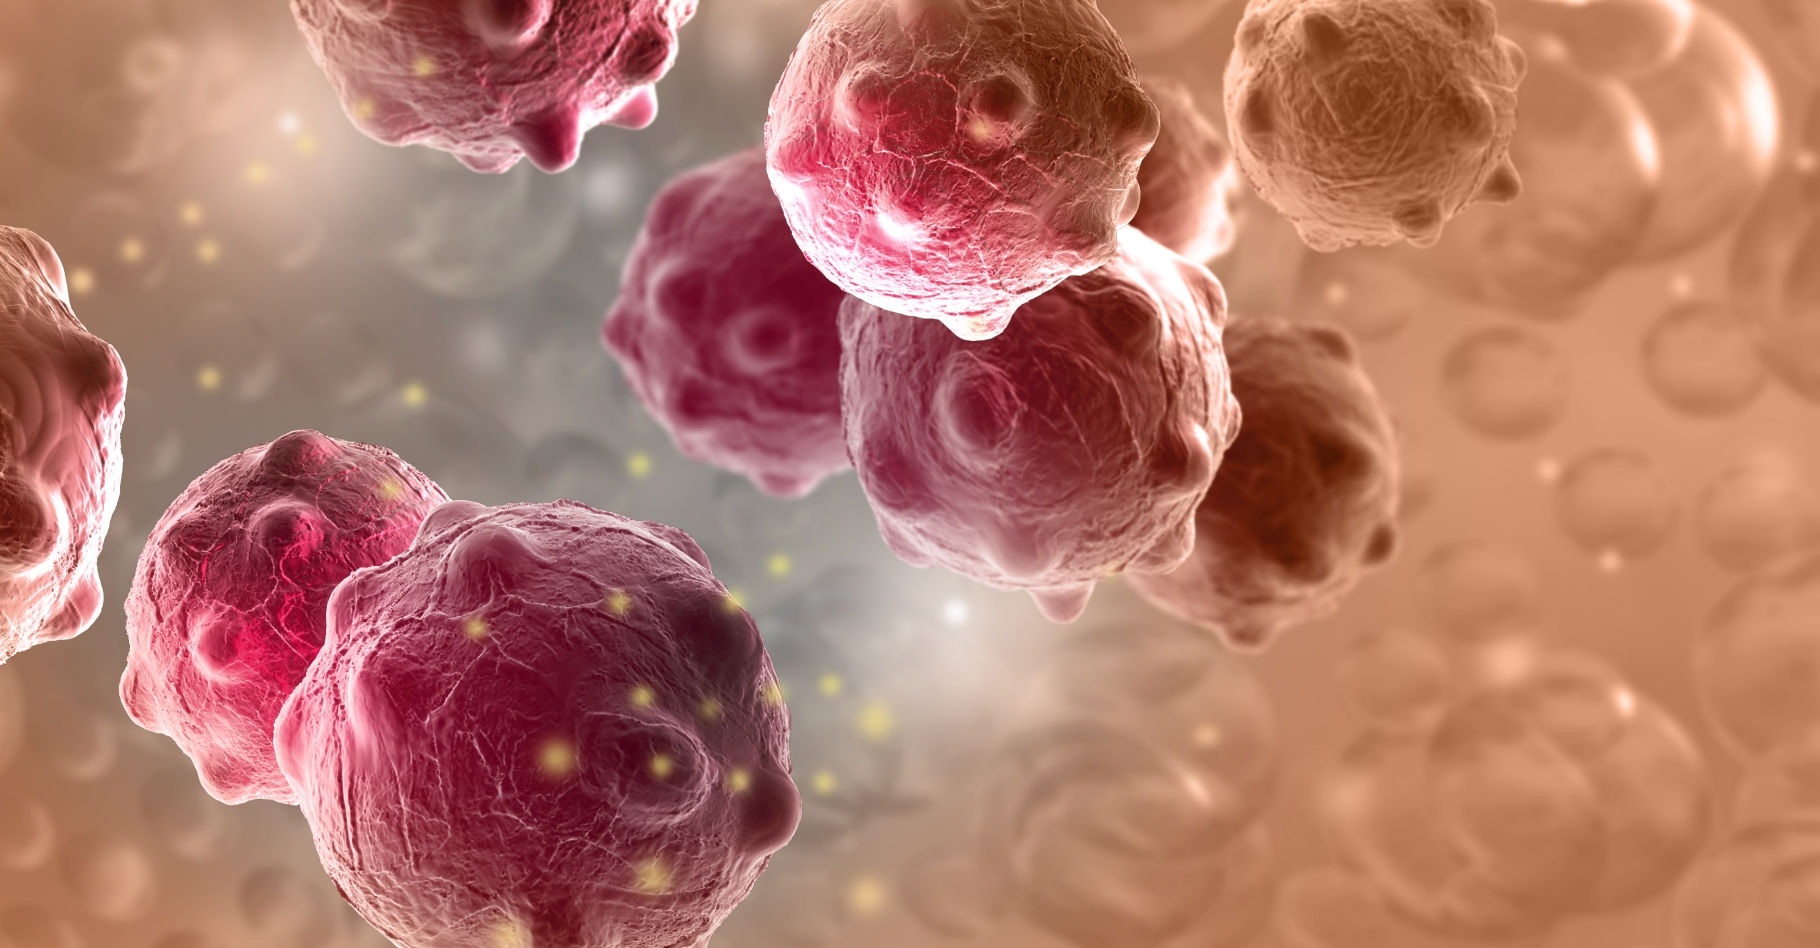 La protéine développée par les chercheurs, OMO-103, inhiberait&nbsp;le gène MYC impliqué dans de nombreuses voies de signalisation cellulaire qui favorisent différents cancers.&nbsp;© Johan Vitanovski, Shutterstock